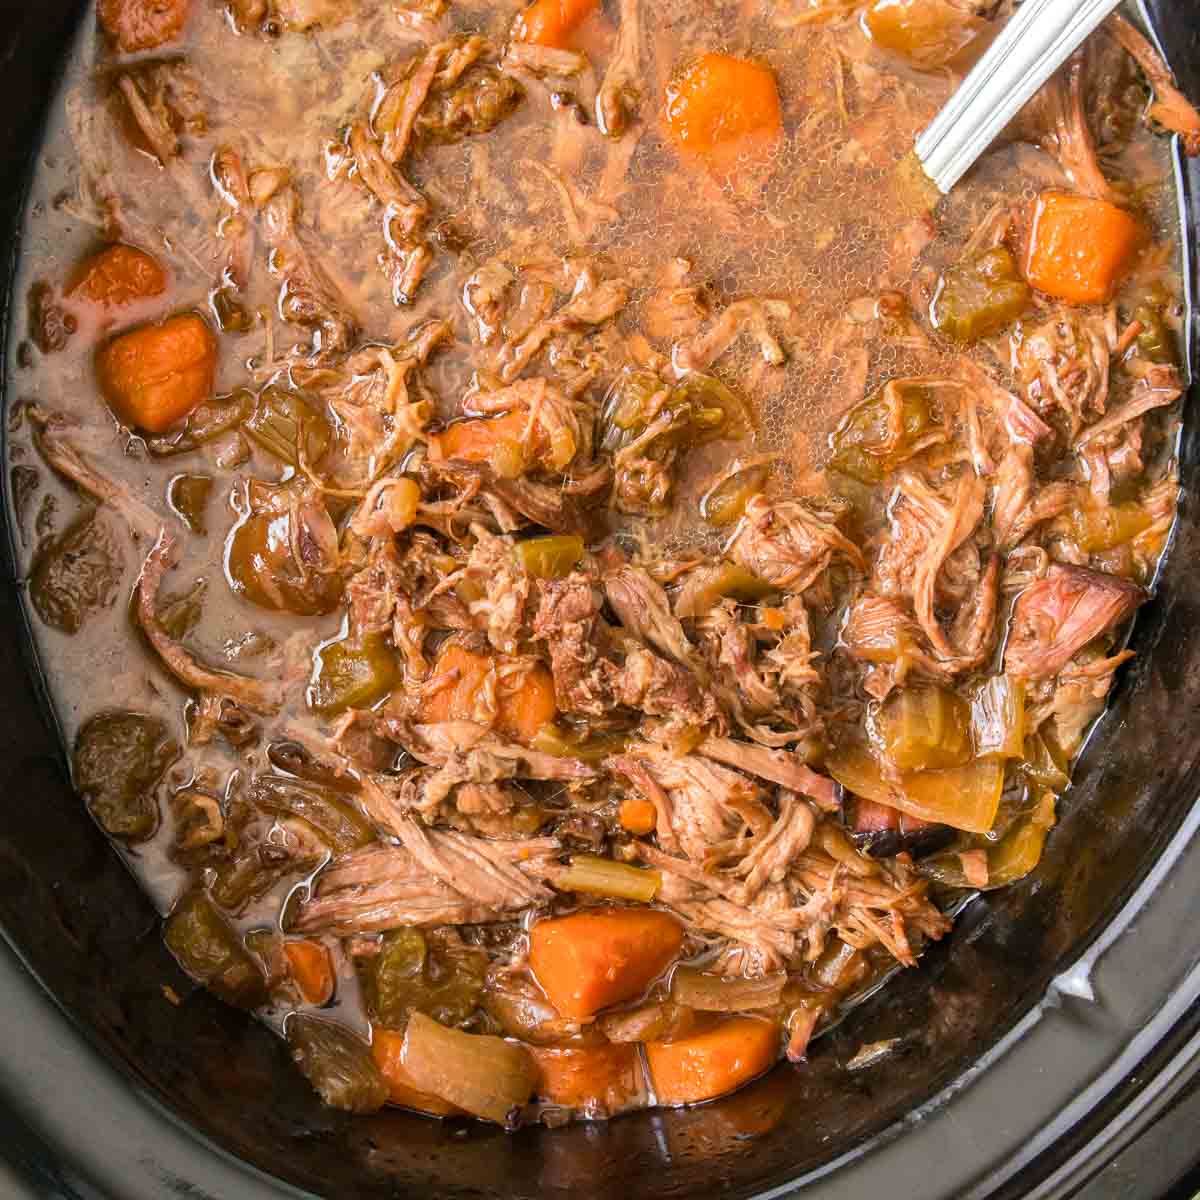 Shredded pot roast in a slow cooker